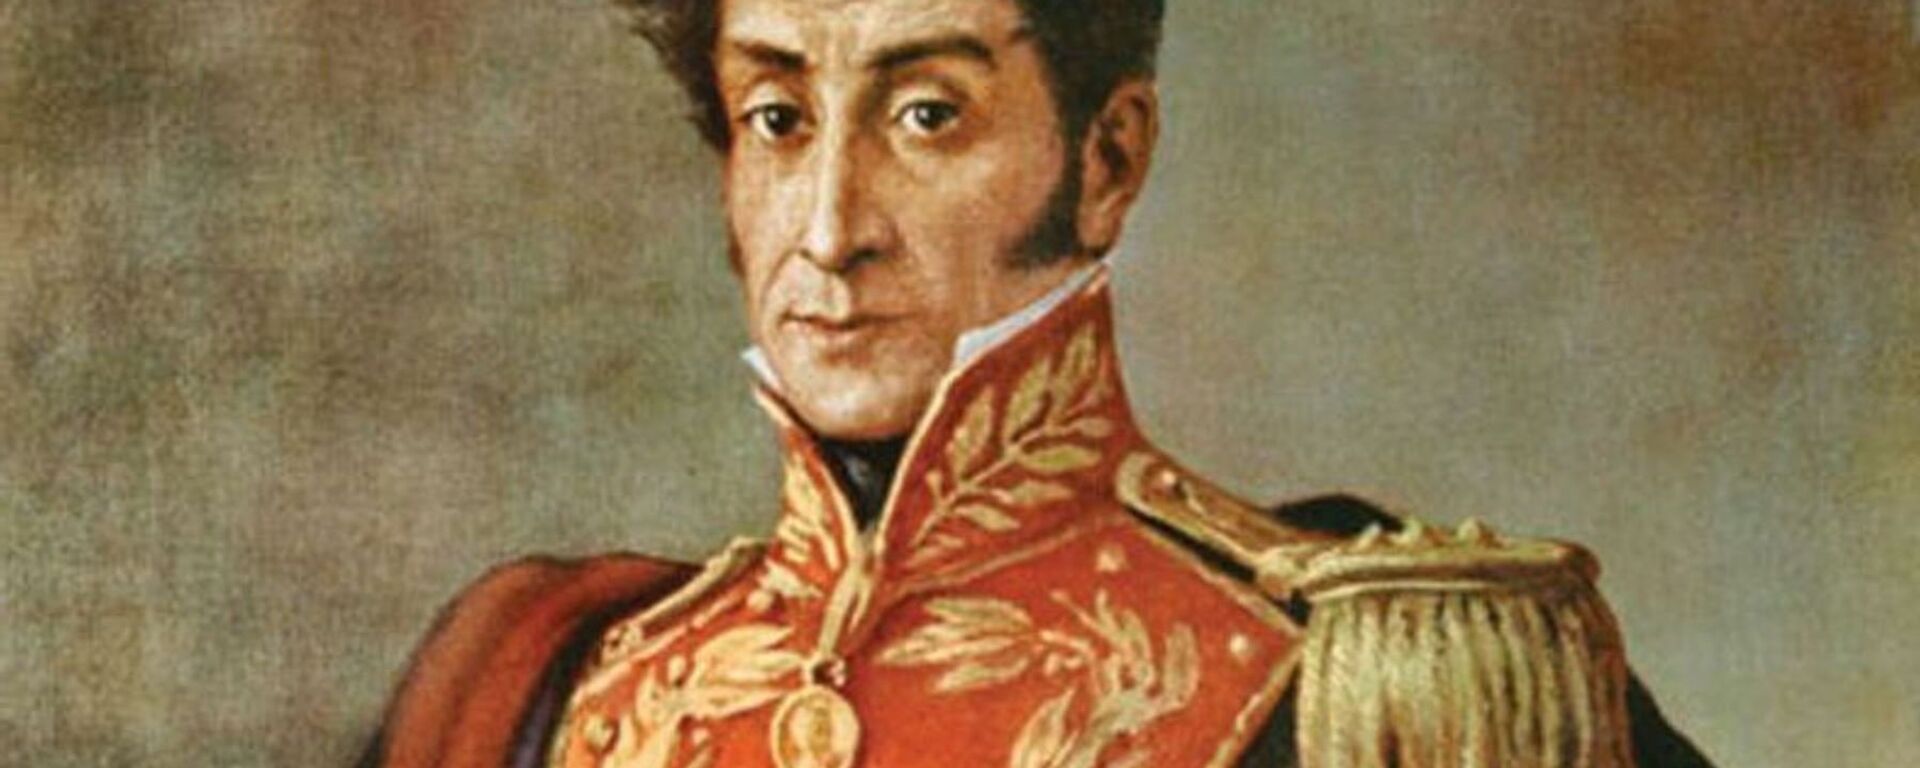 Retrato de Simón Bolívar - Sputnik Mundo, 1920, 23.07.2019